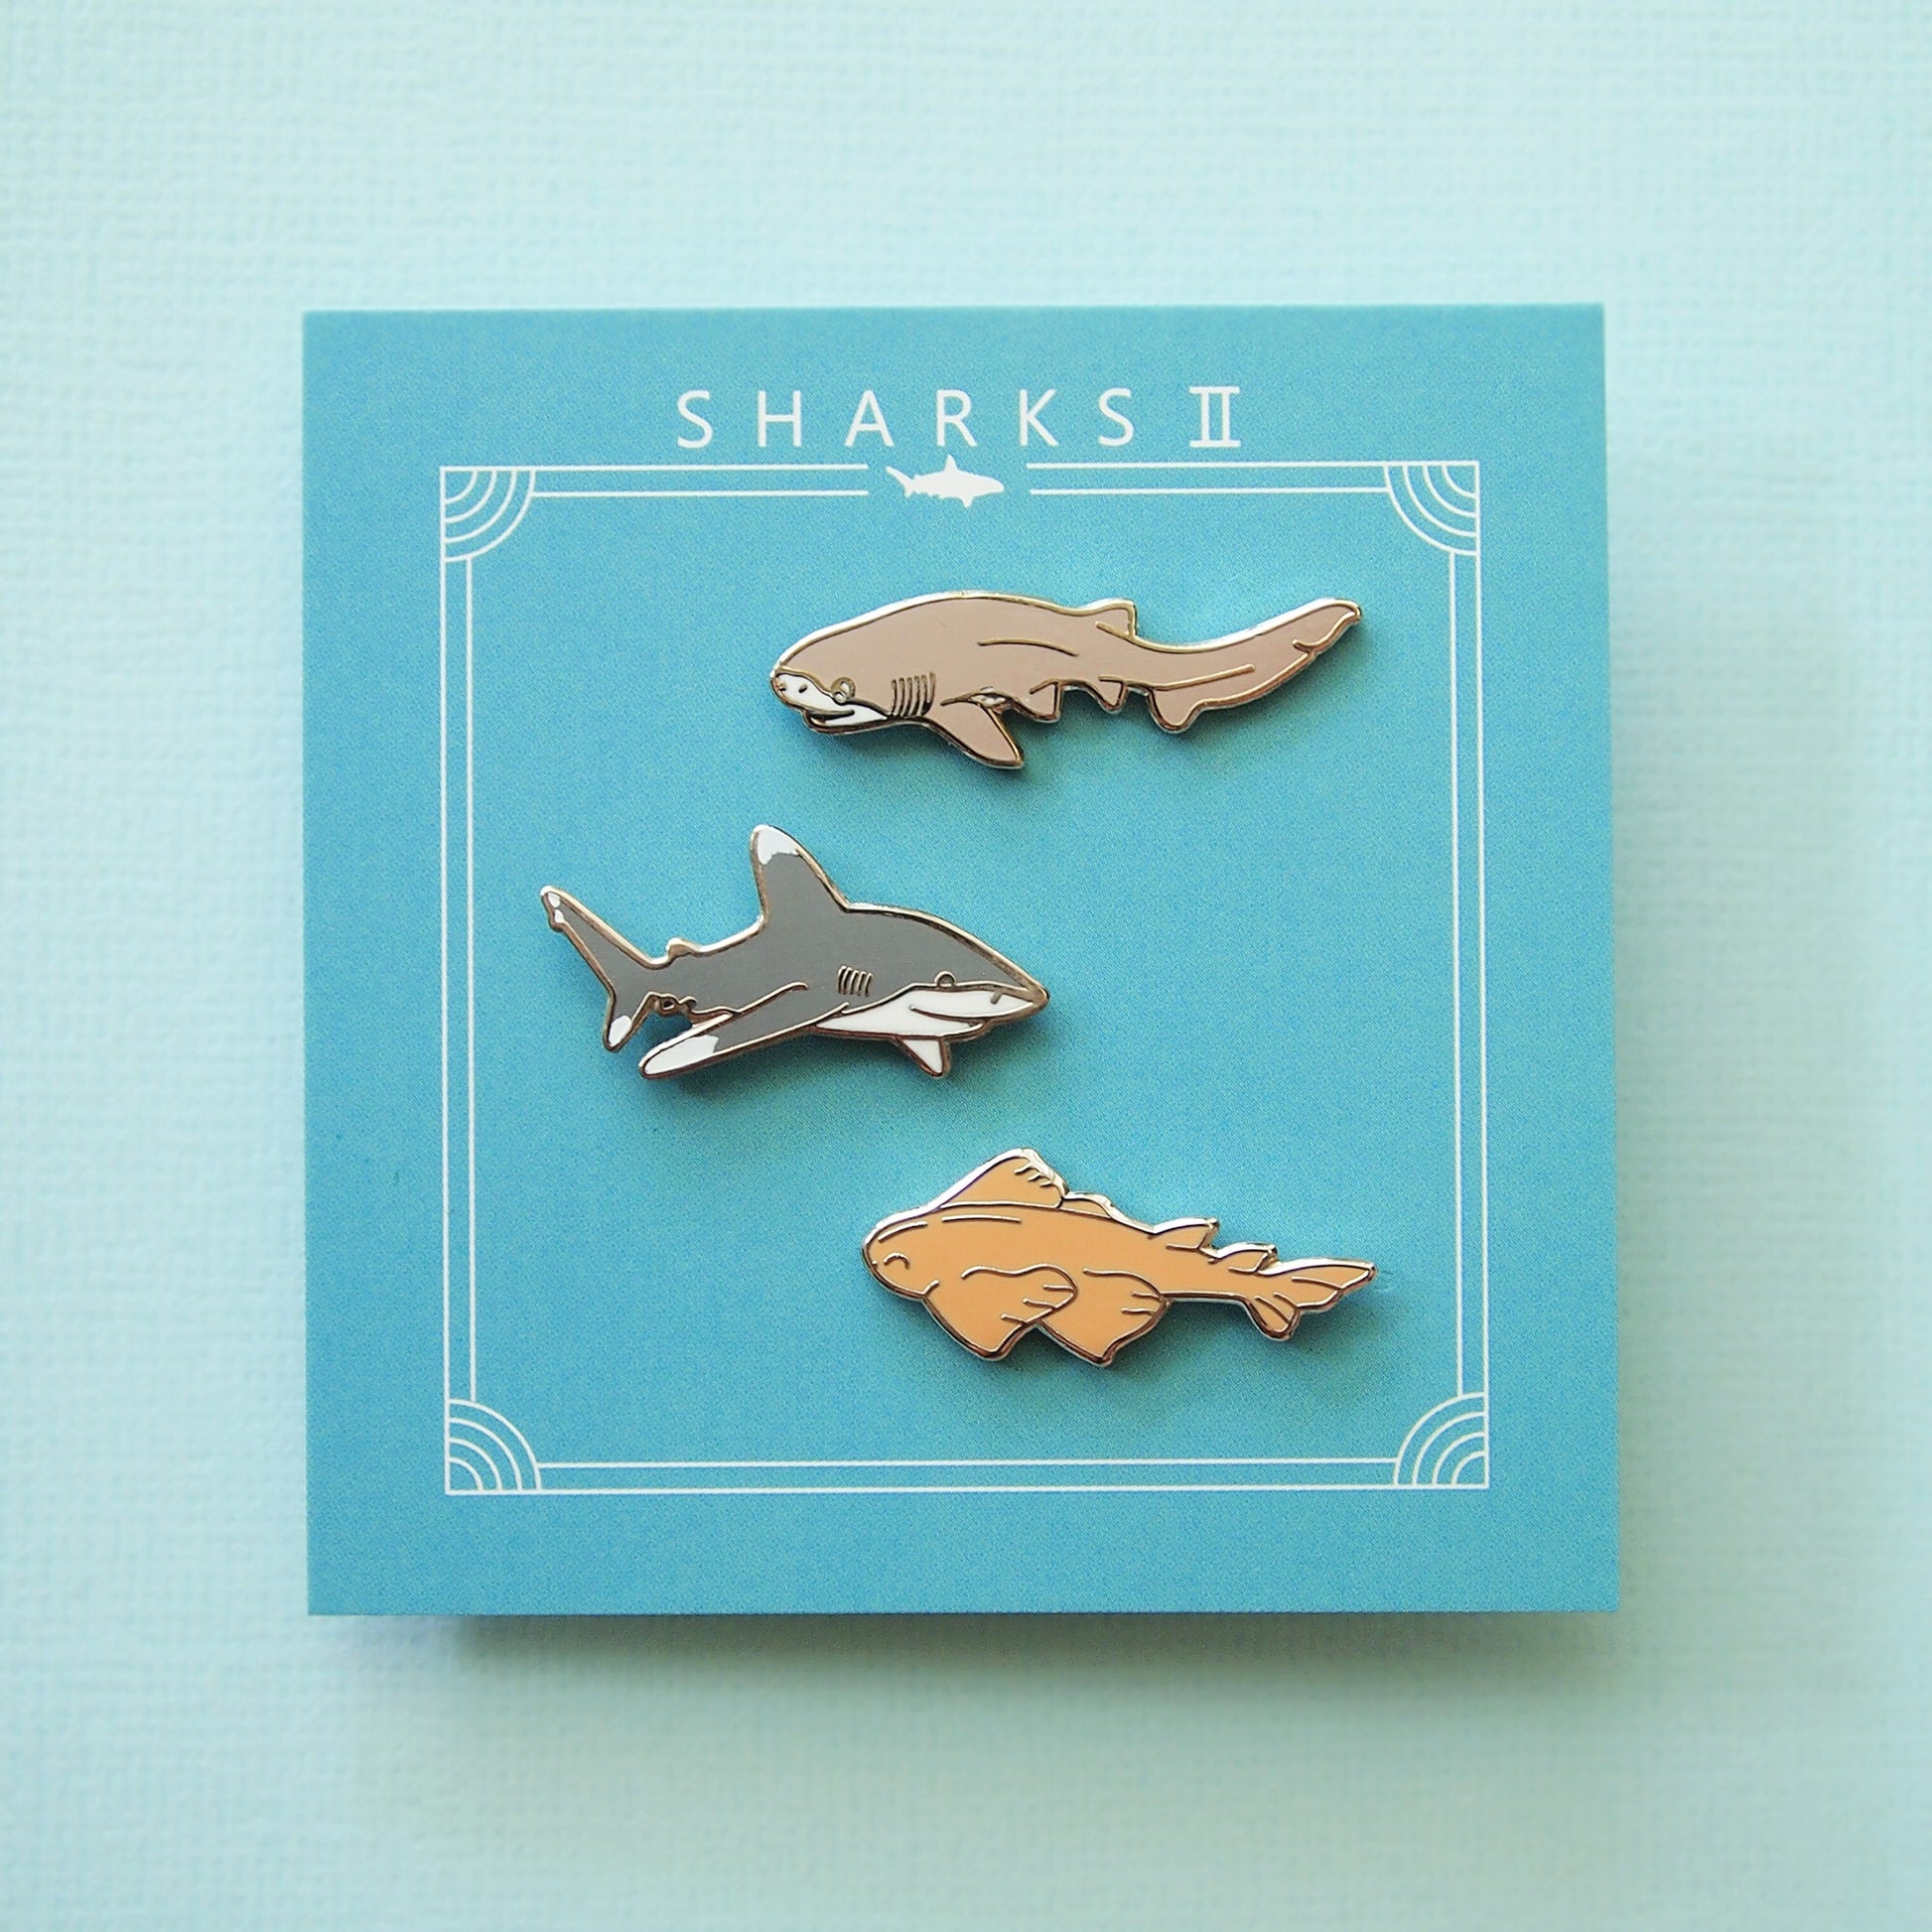 sharks ii pins set of 3 pins (six gill, oceanic, angel shark)